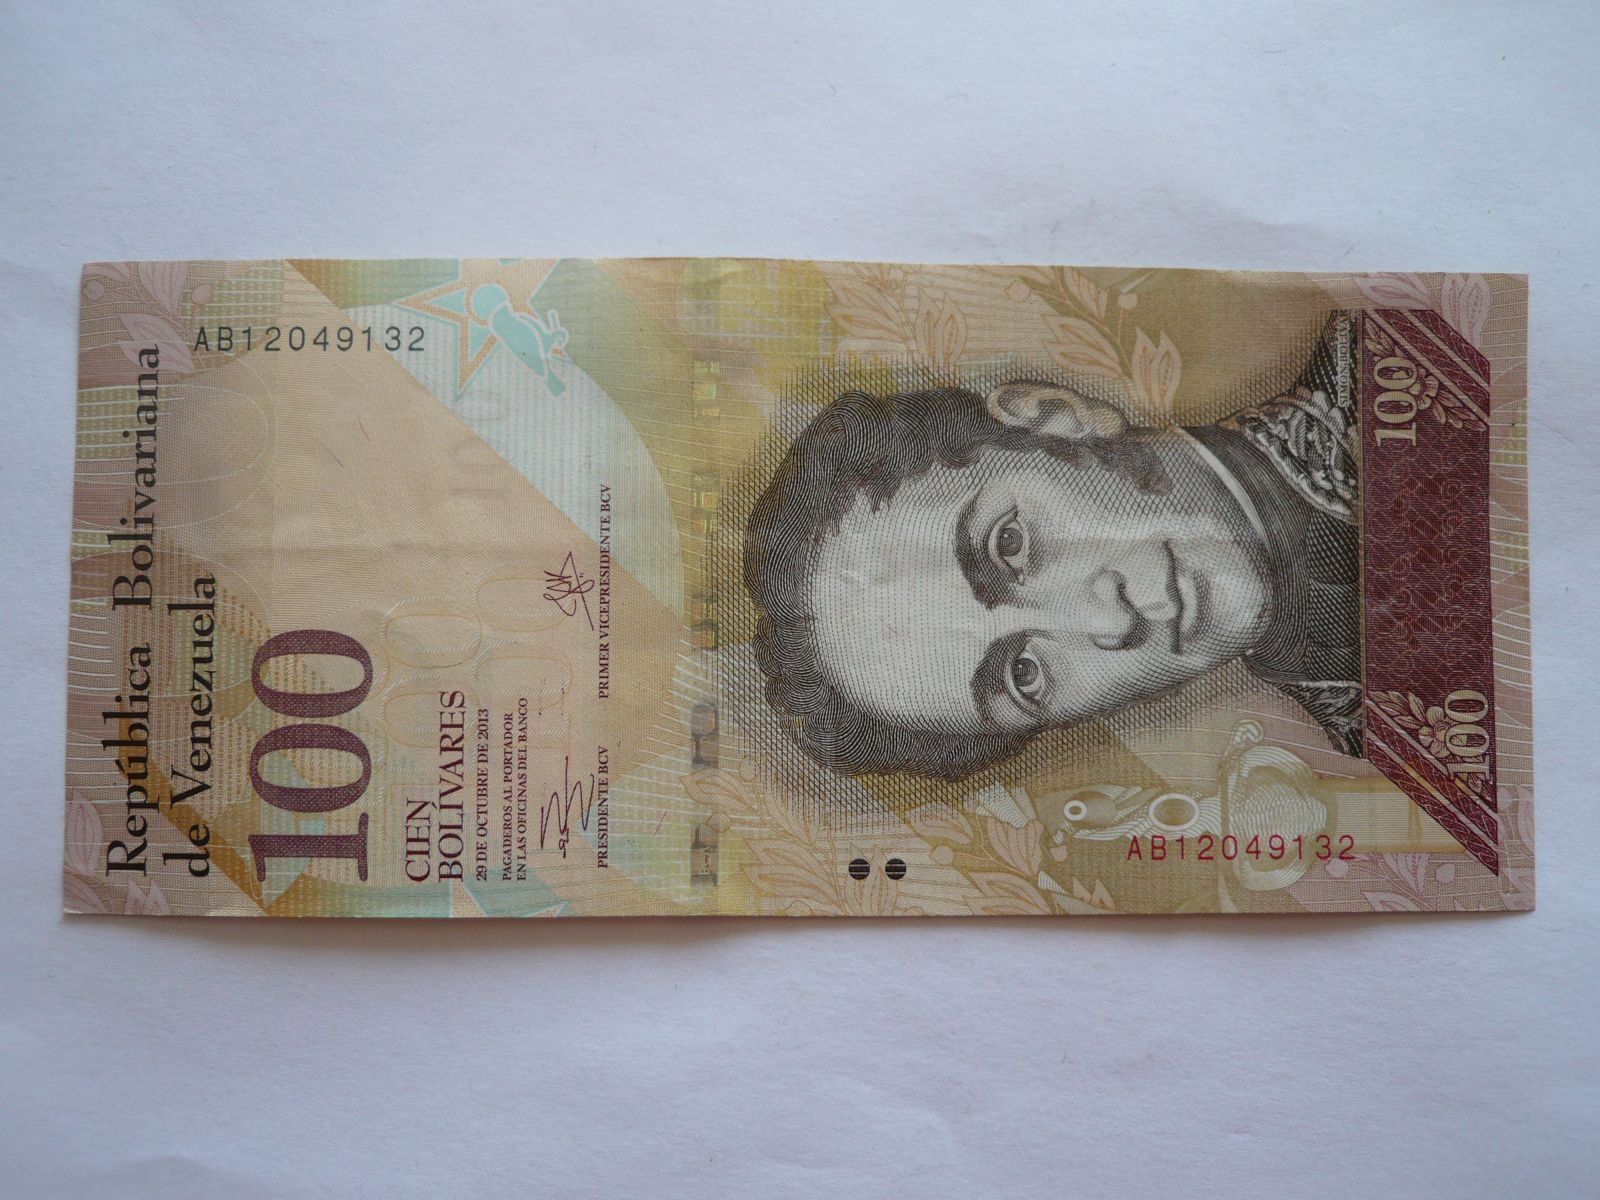 100 Bolivares, 2013 Venezuela